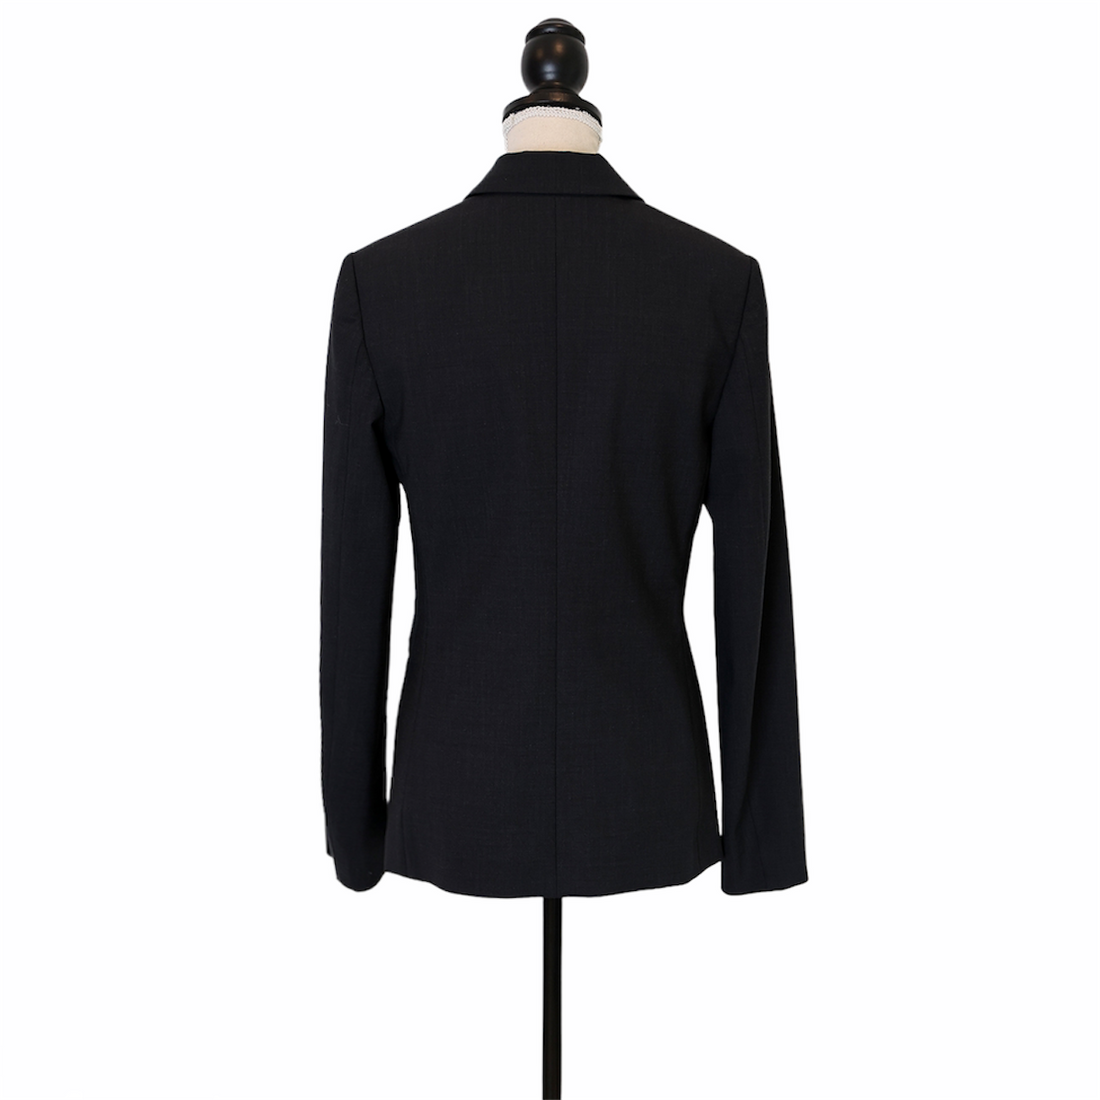 Brunello Cucinelli blazer with patch breast pocket